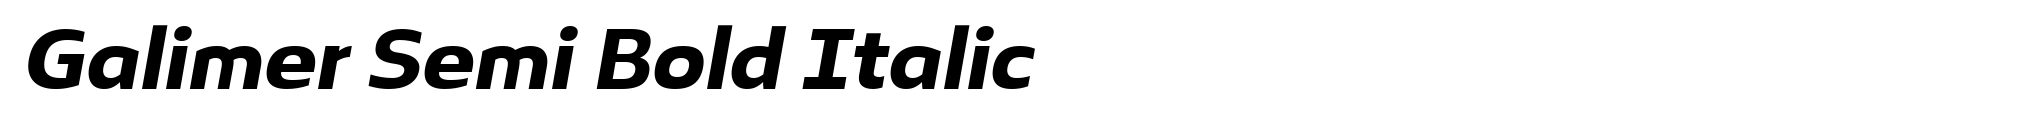 Galimer Semi Bold Italic image